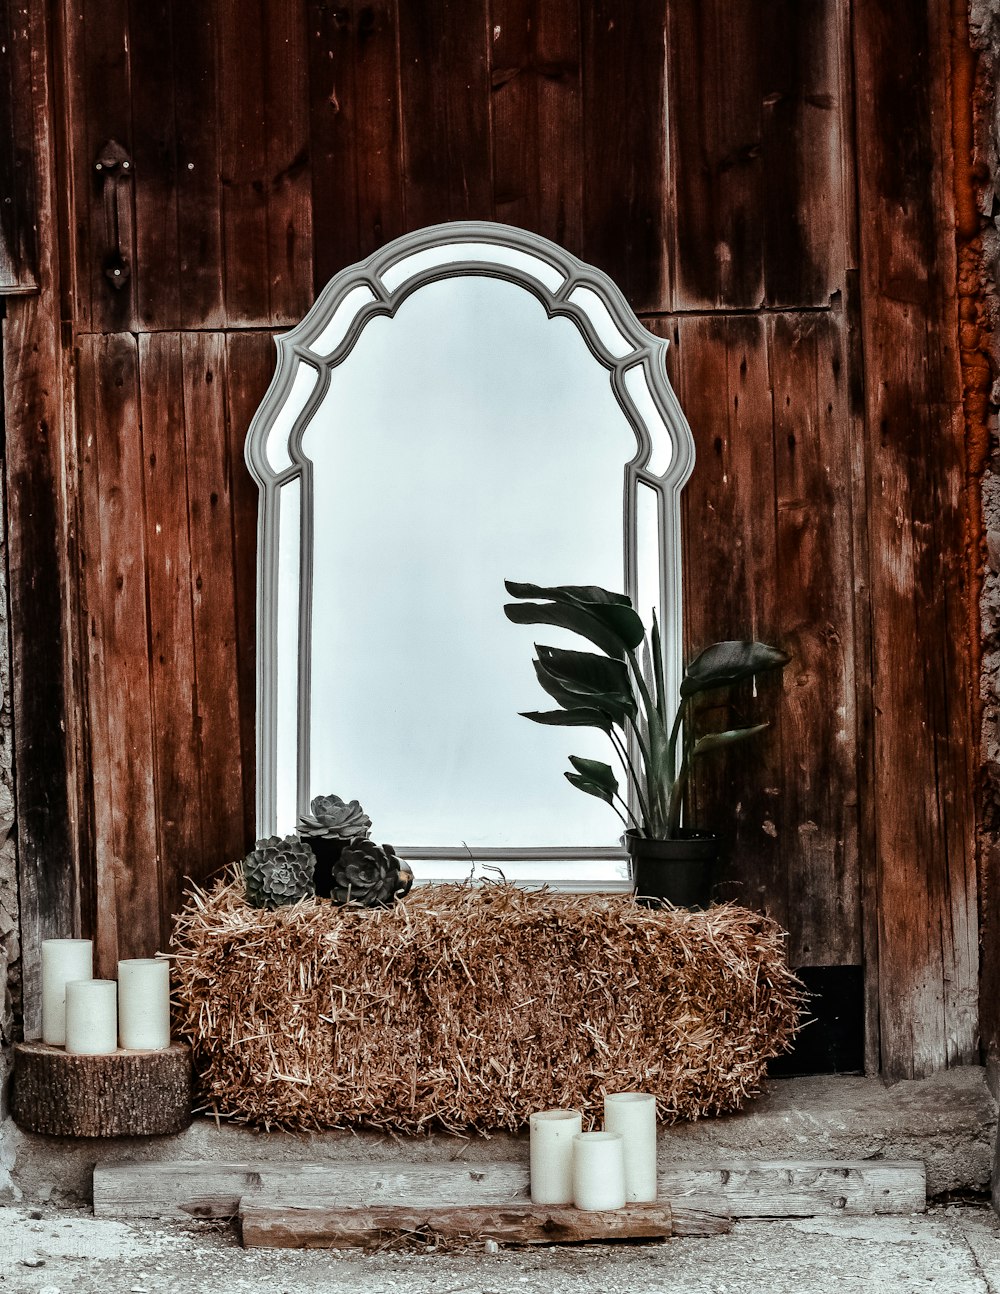 干し草と鉢植えの緑の葉の植物と灰色のフレームの傾いた鏡